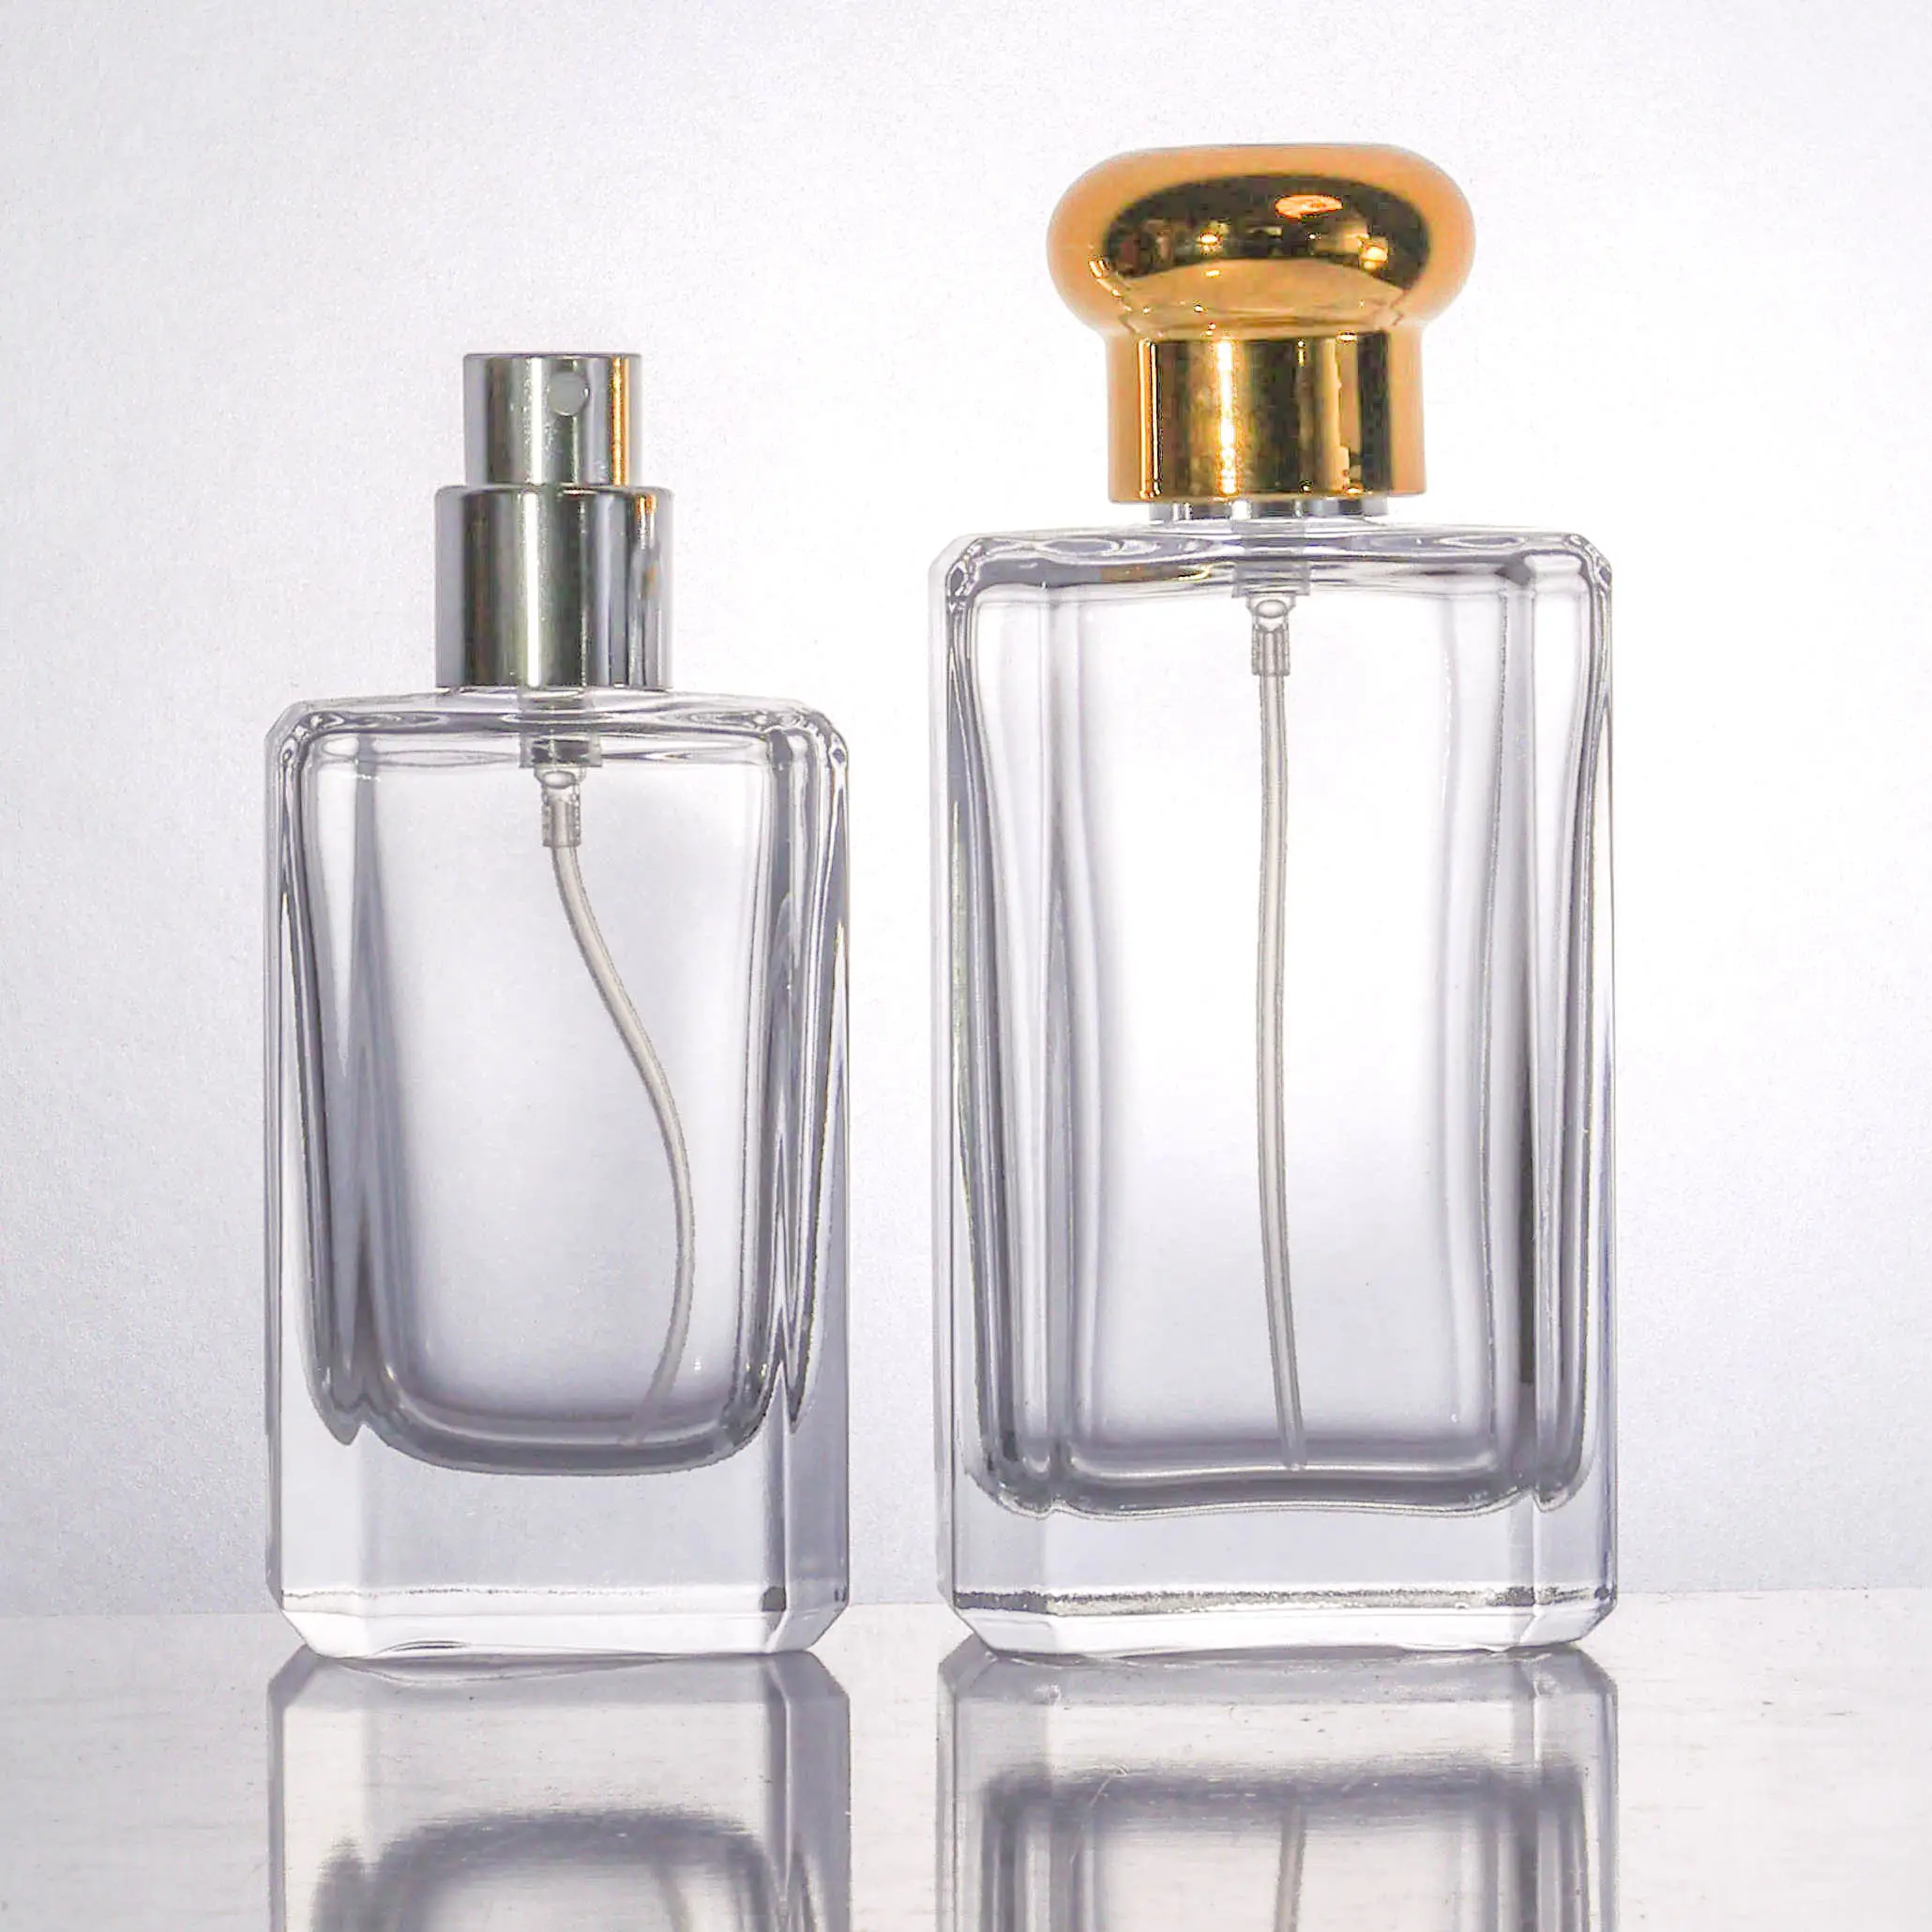 カスタムグレーブラックグラデーションカラー香水瓶スクエアキューブガラス香水瓶ABSサーリンキャップ付き